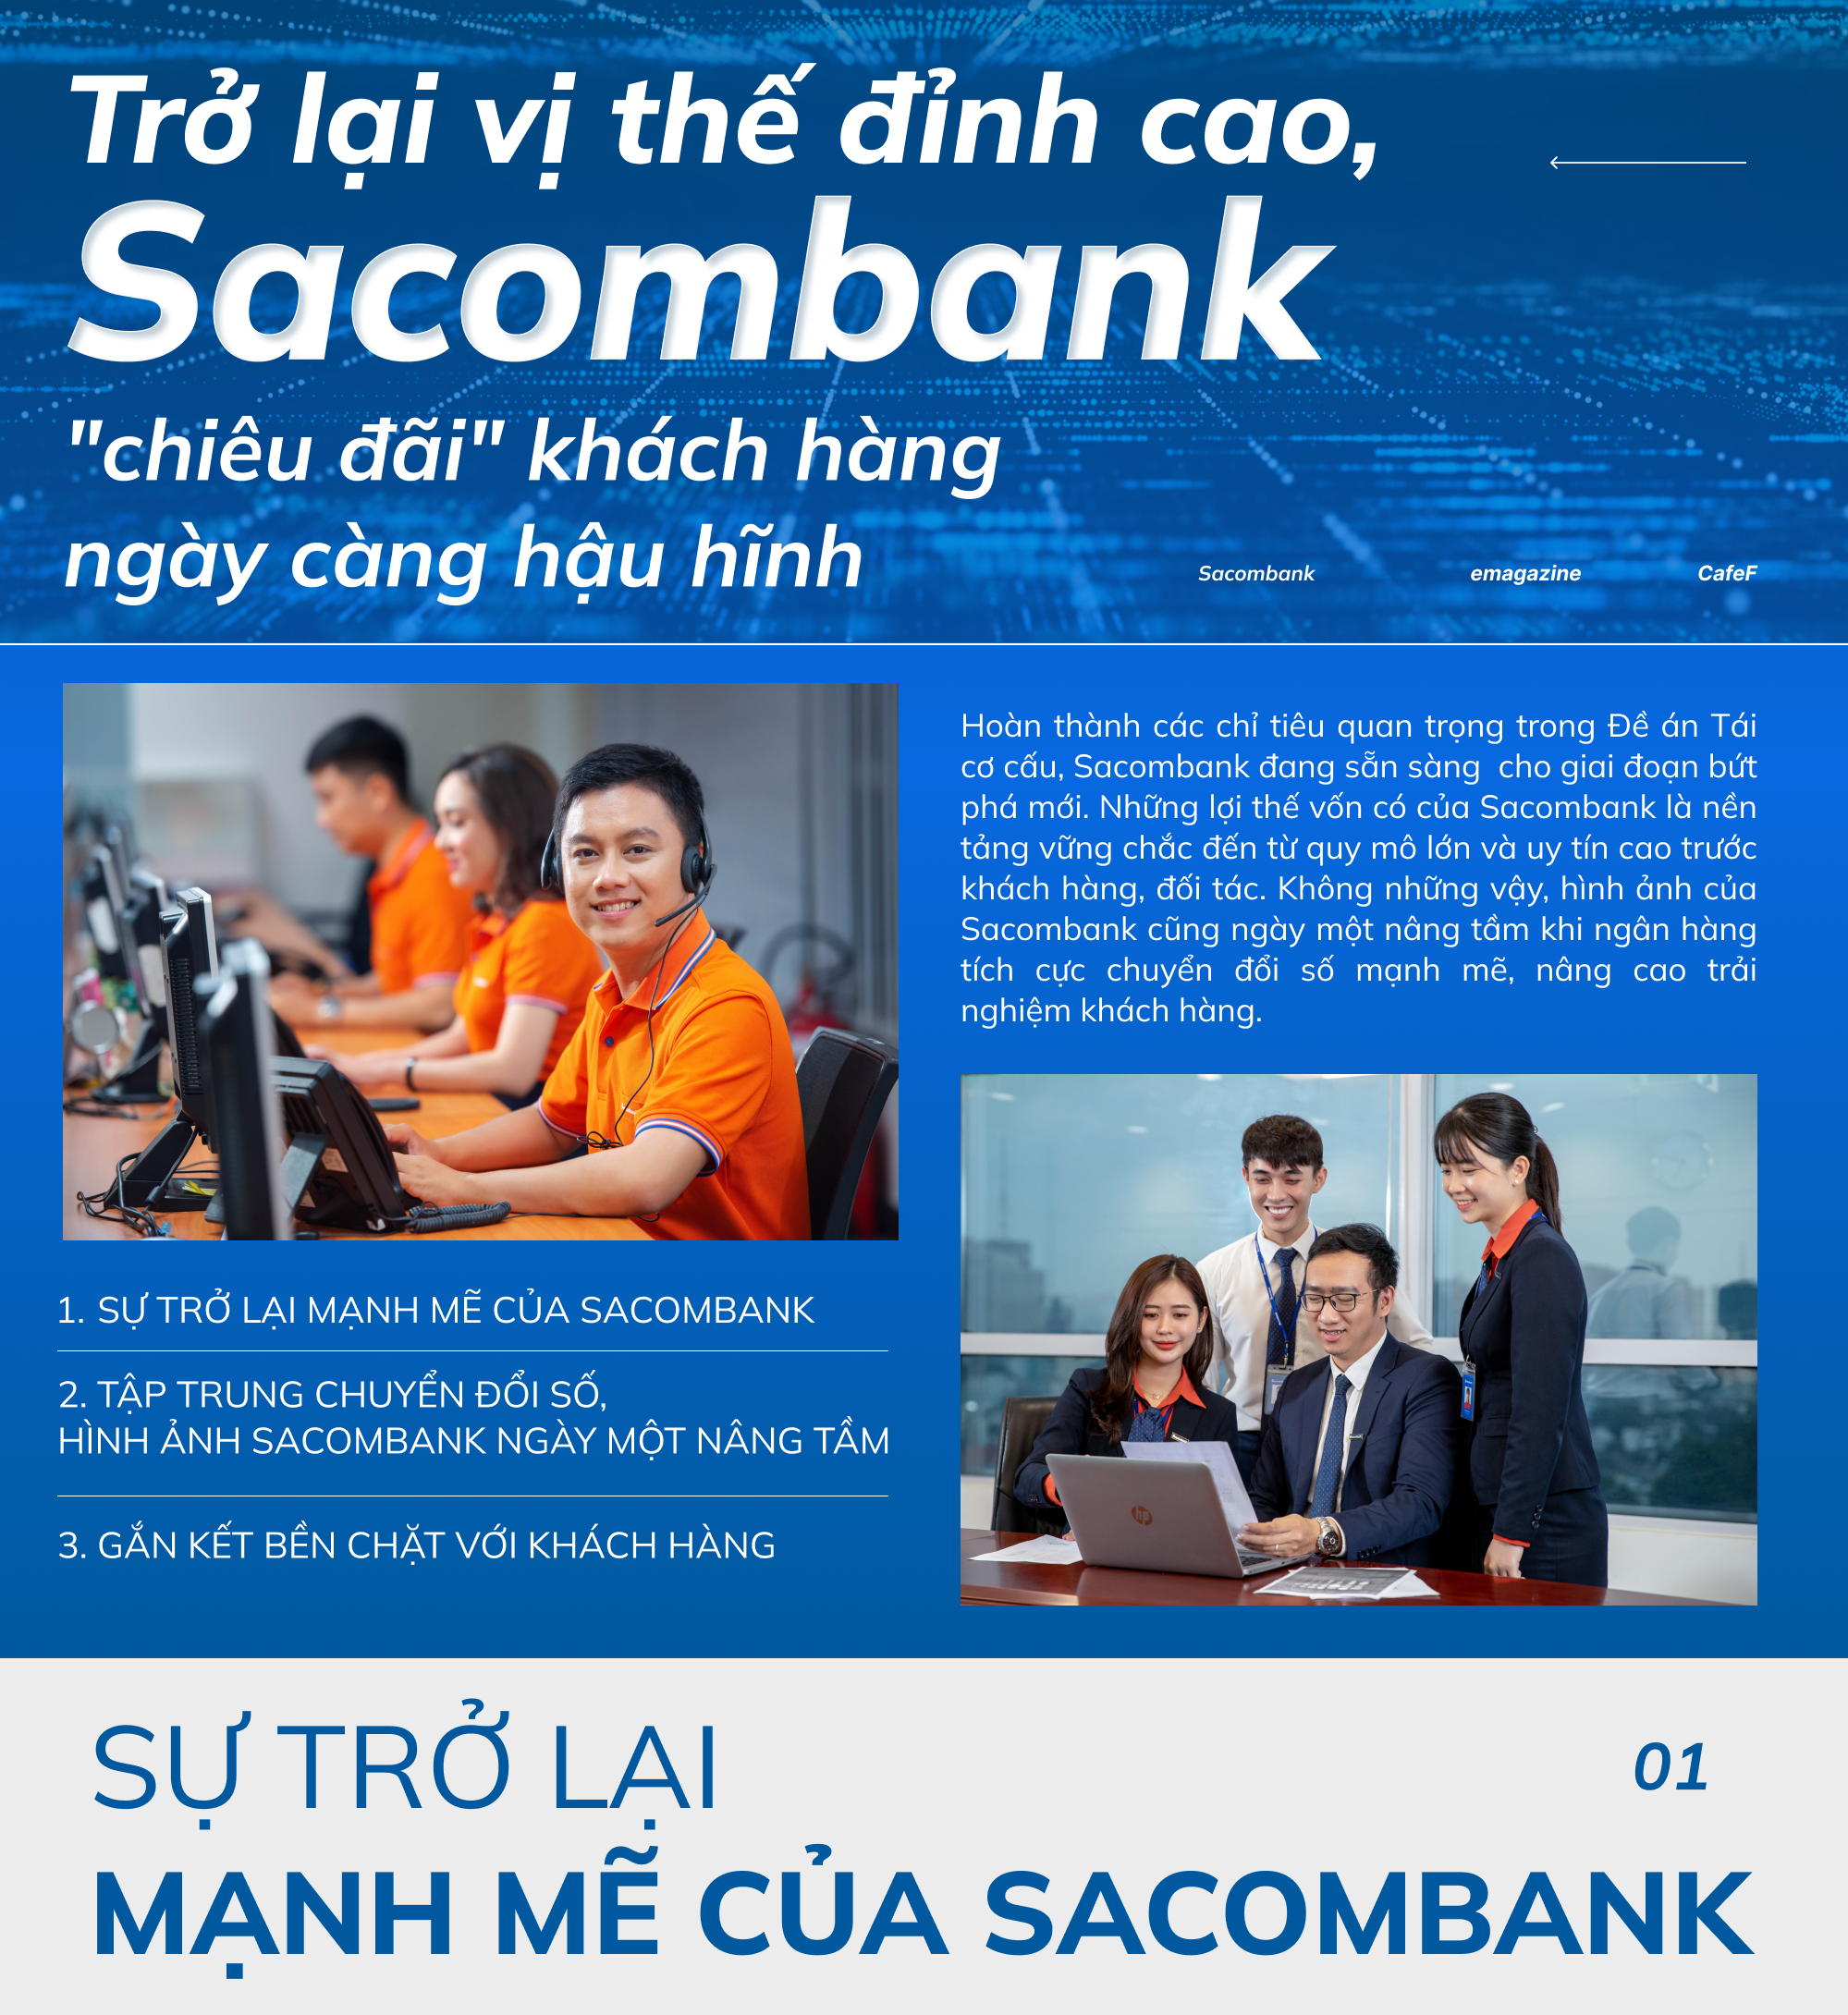 Lợi nhuận trước thuế của Sacombank tăng mạnh đạt xấp xỉ 2500 tỷ đồng   Doanh nghiệp  Vietnam VietnamPlus